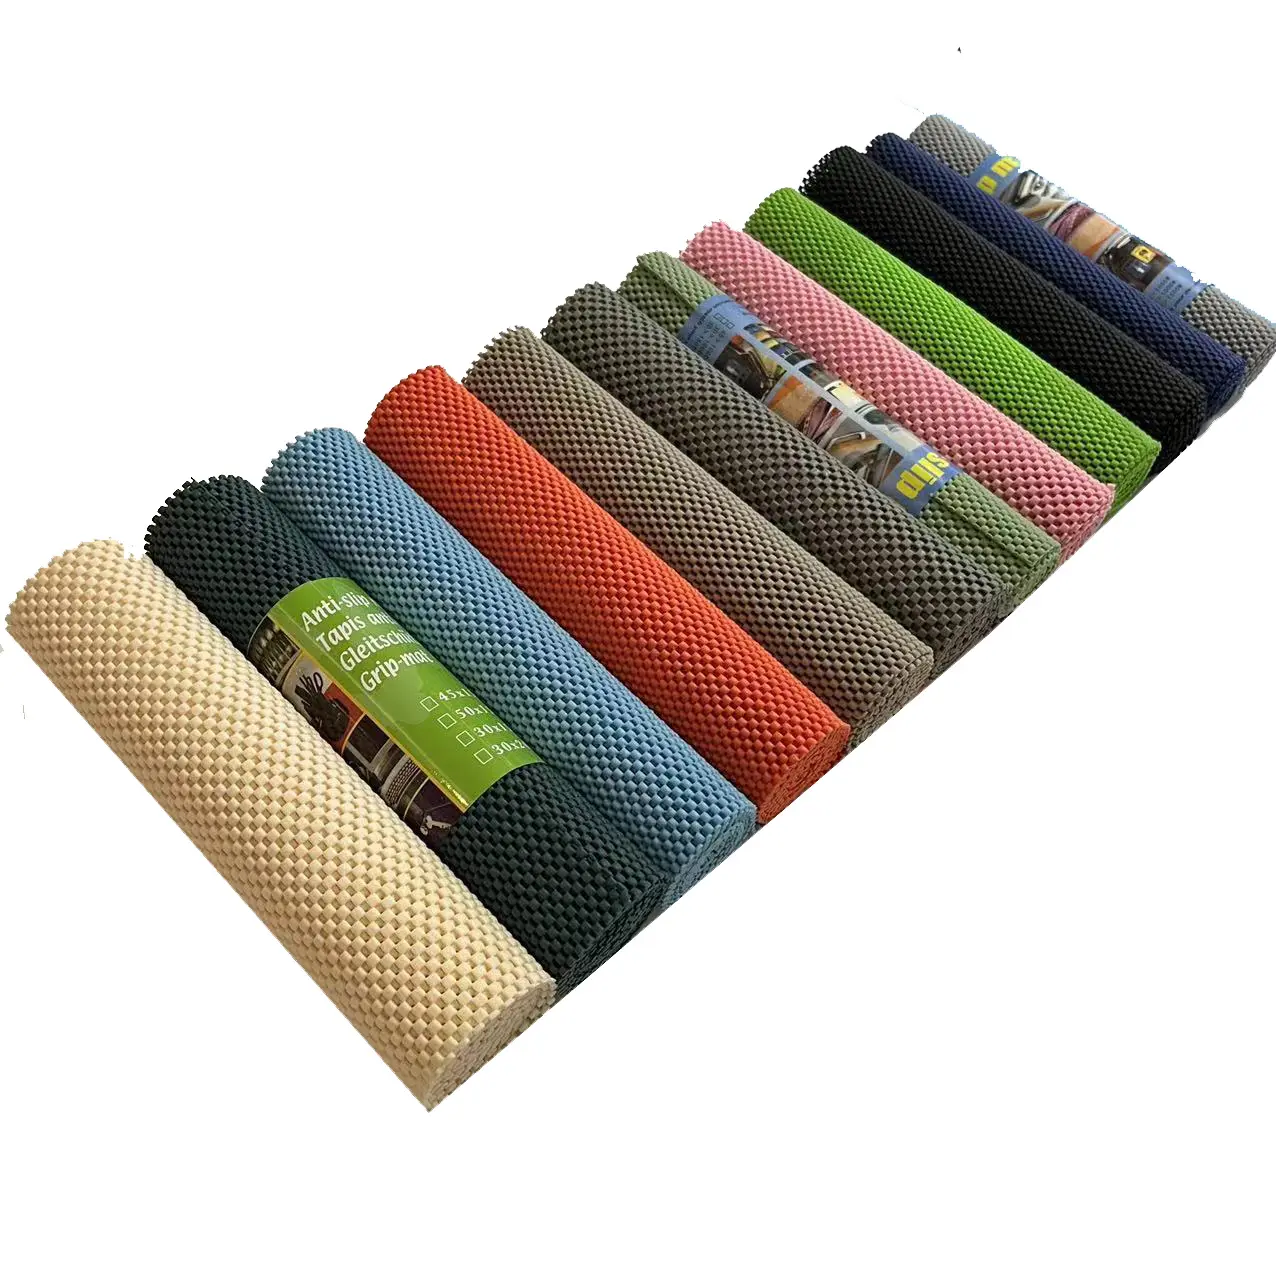 Mousse colorée antidérapante en PVC, sous tapis, tapis d'étagère, fond solide, housse de protection pour armoire, commode